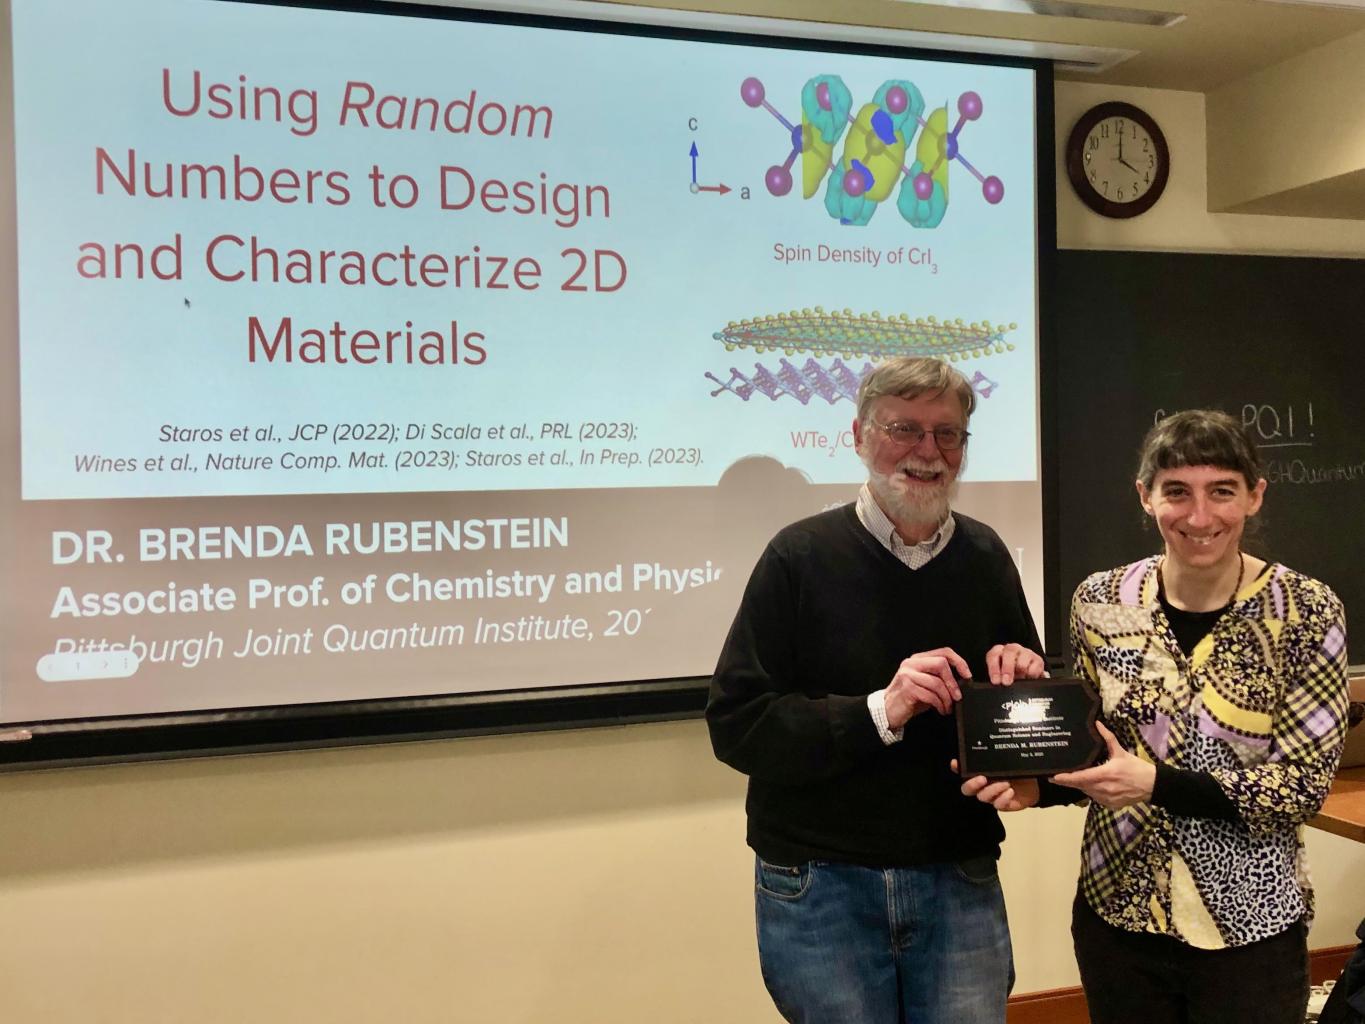 Professor Rubenstein receives her plaque from Professor Ken Jordan